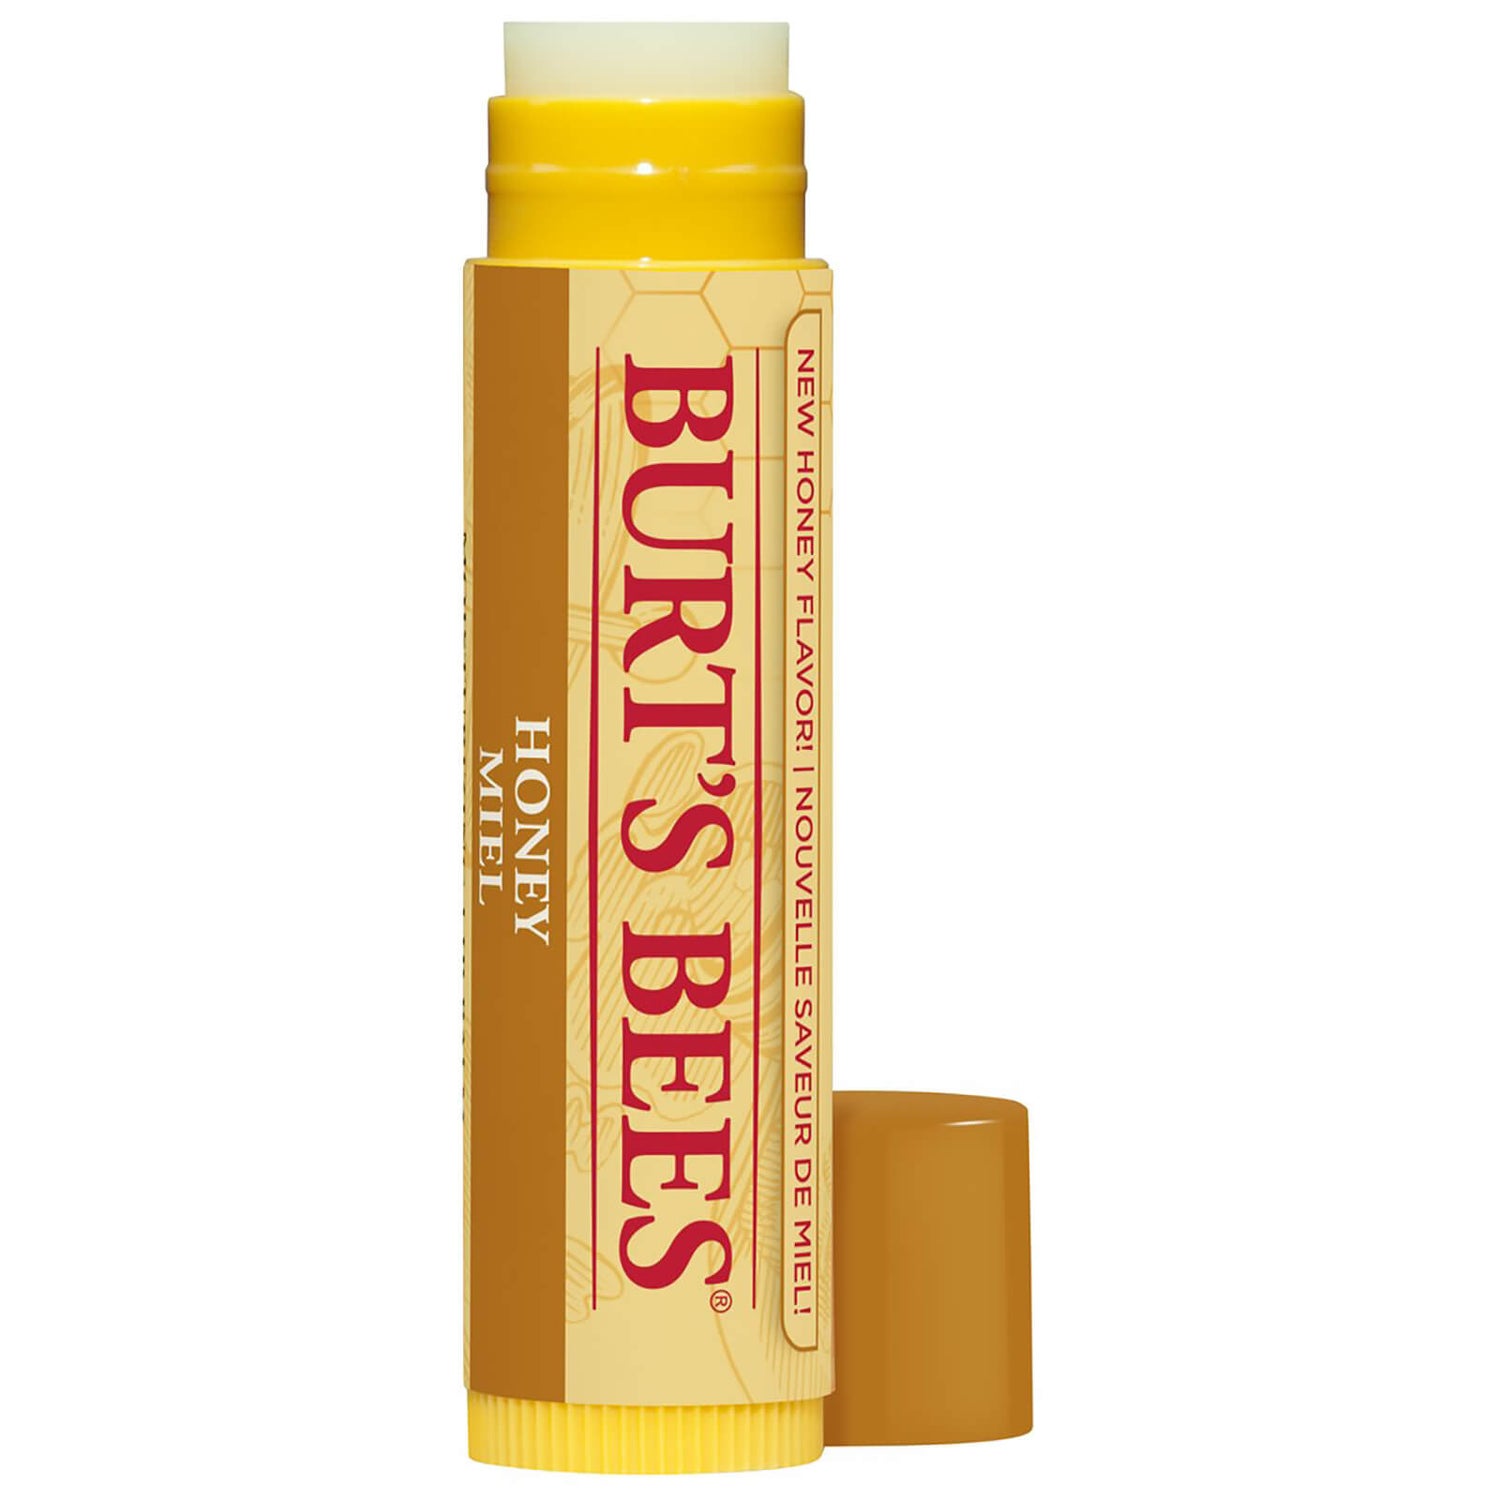 Burt's Bees Honig-Lippenbalsam Tube